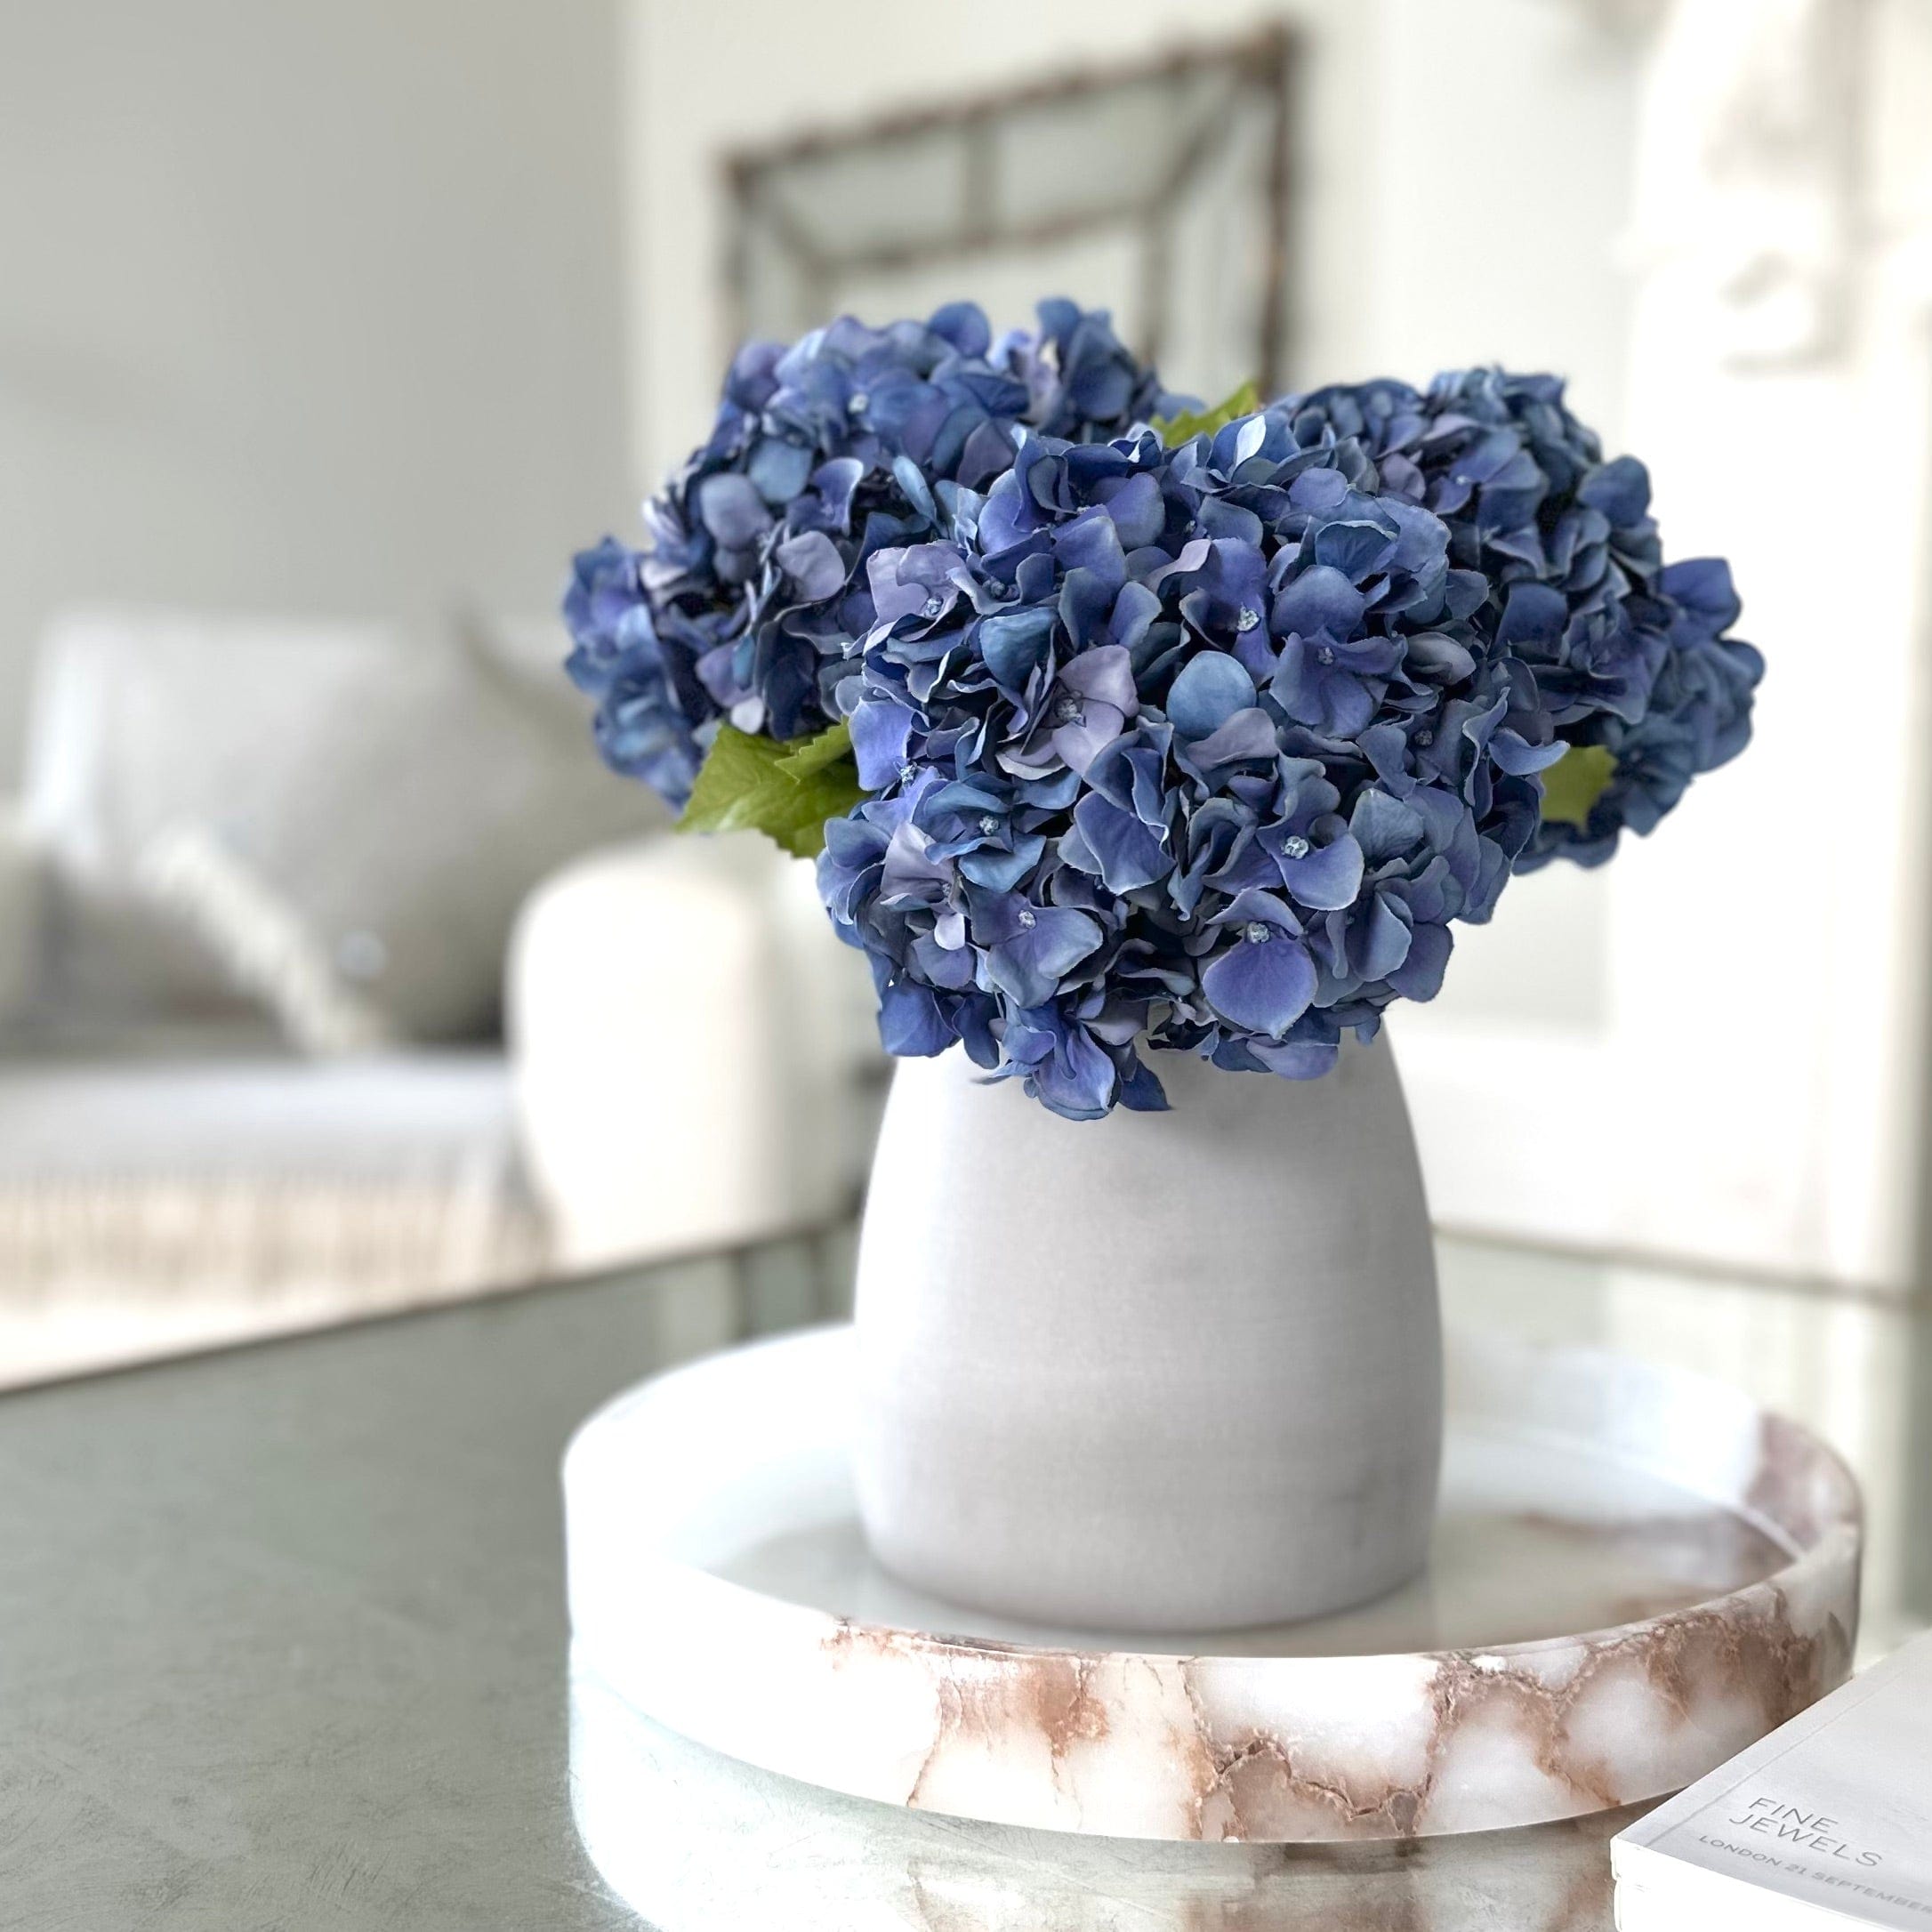 Artificial flowers luxury faux silk blue dried hydrangeas in kemble pot vase lifelike realistic faux flowers ABP1766 ABY5070BL